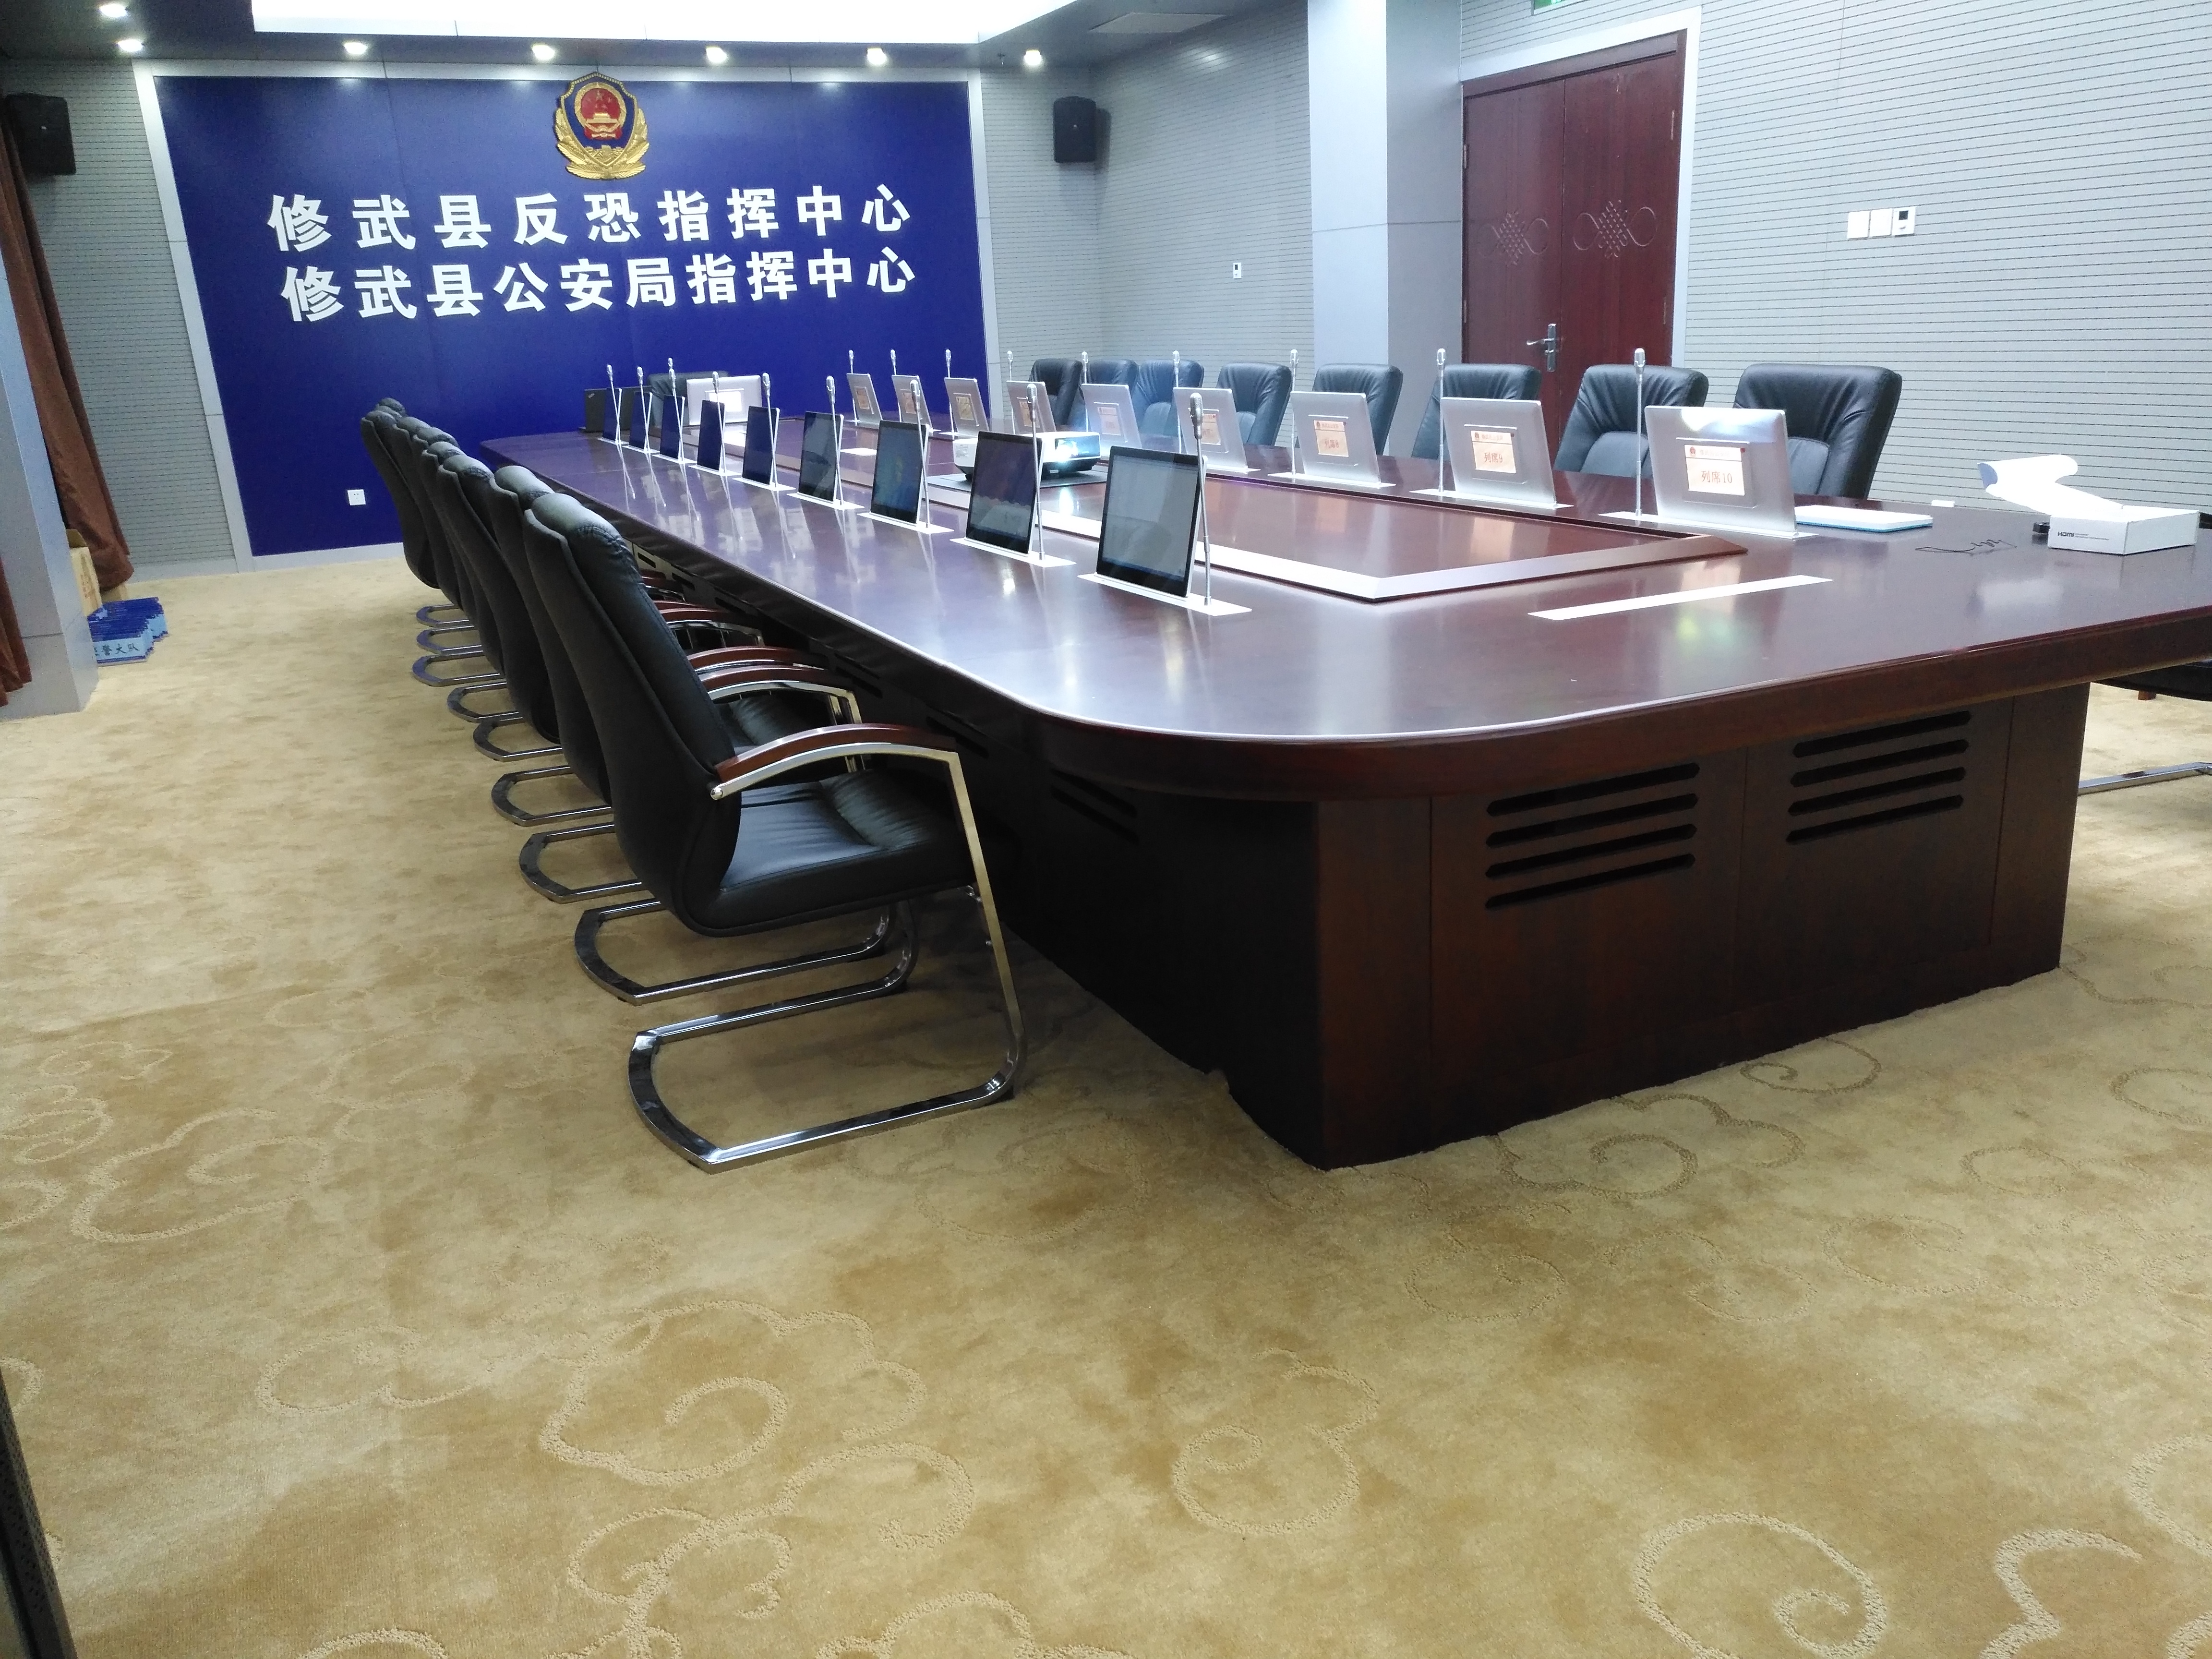 河南省某公安局指挥中心应用Wimuch智能无纸化办公会议系统